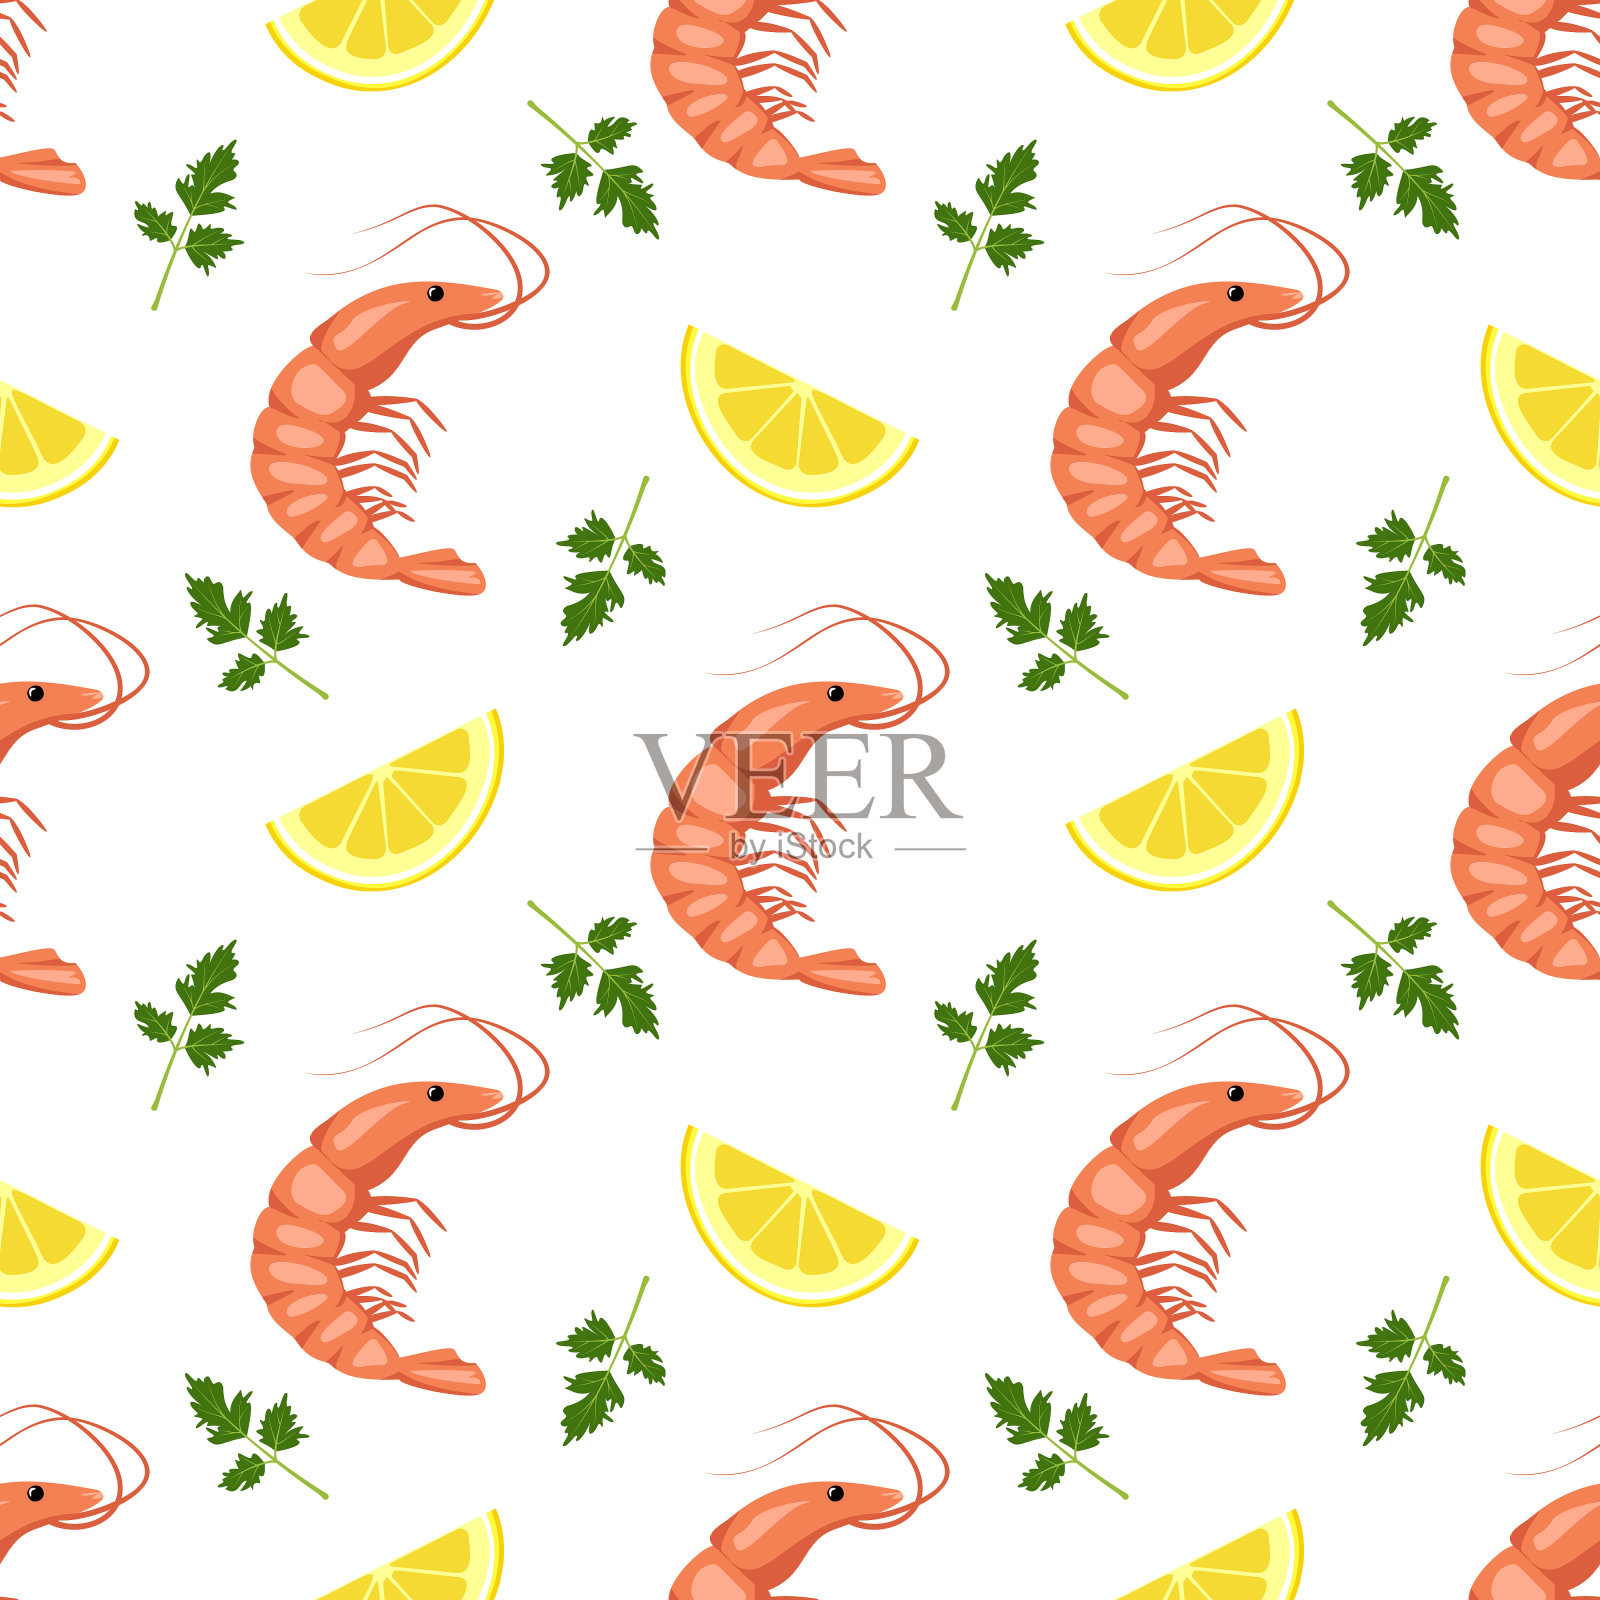 用虾或对虾，柠檬角和欧芹叶做成的无缝图案。用于纺织品、纸张等食品印刷设计。是维生素和健康营养的来源插画图片素材